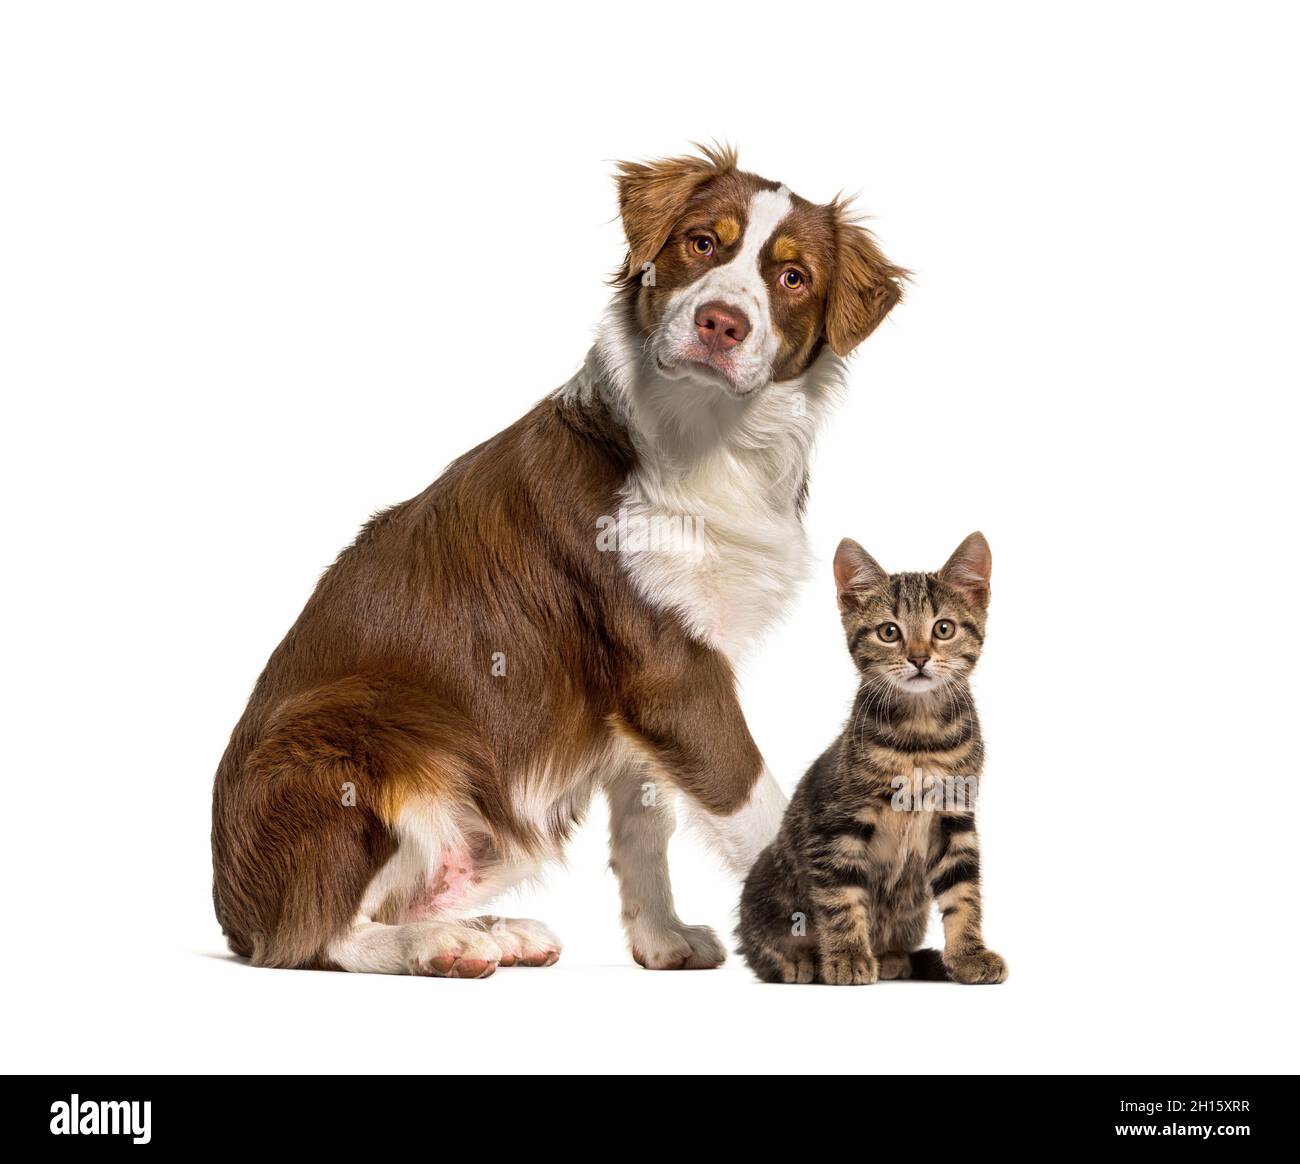 Gatto e cane insieme di fronte a sfondo bianco. Pastore australiano e gatto di razza crosse, isolato su bianco Foto Stock